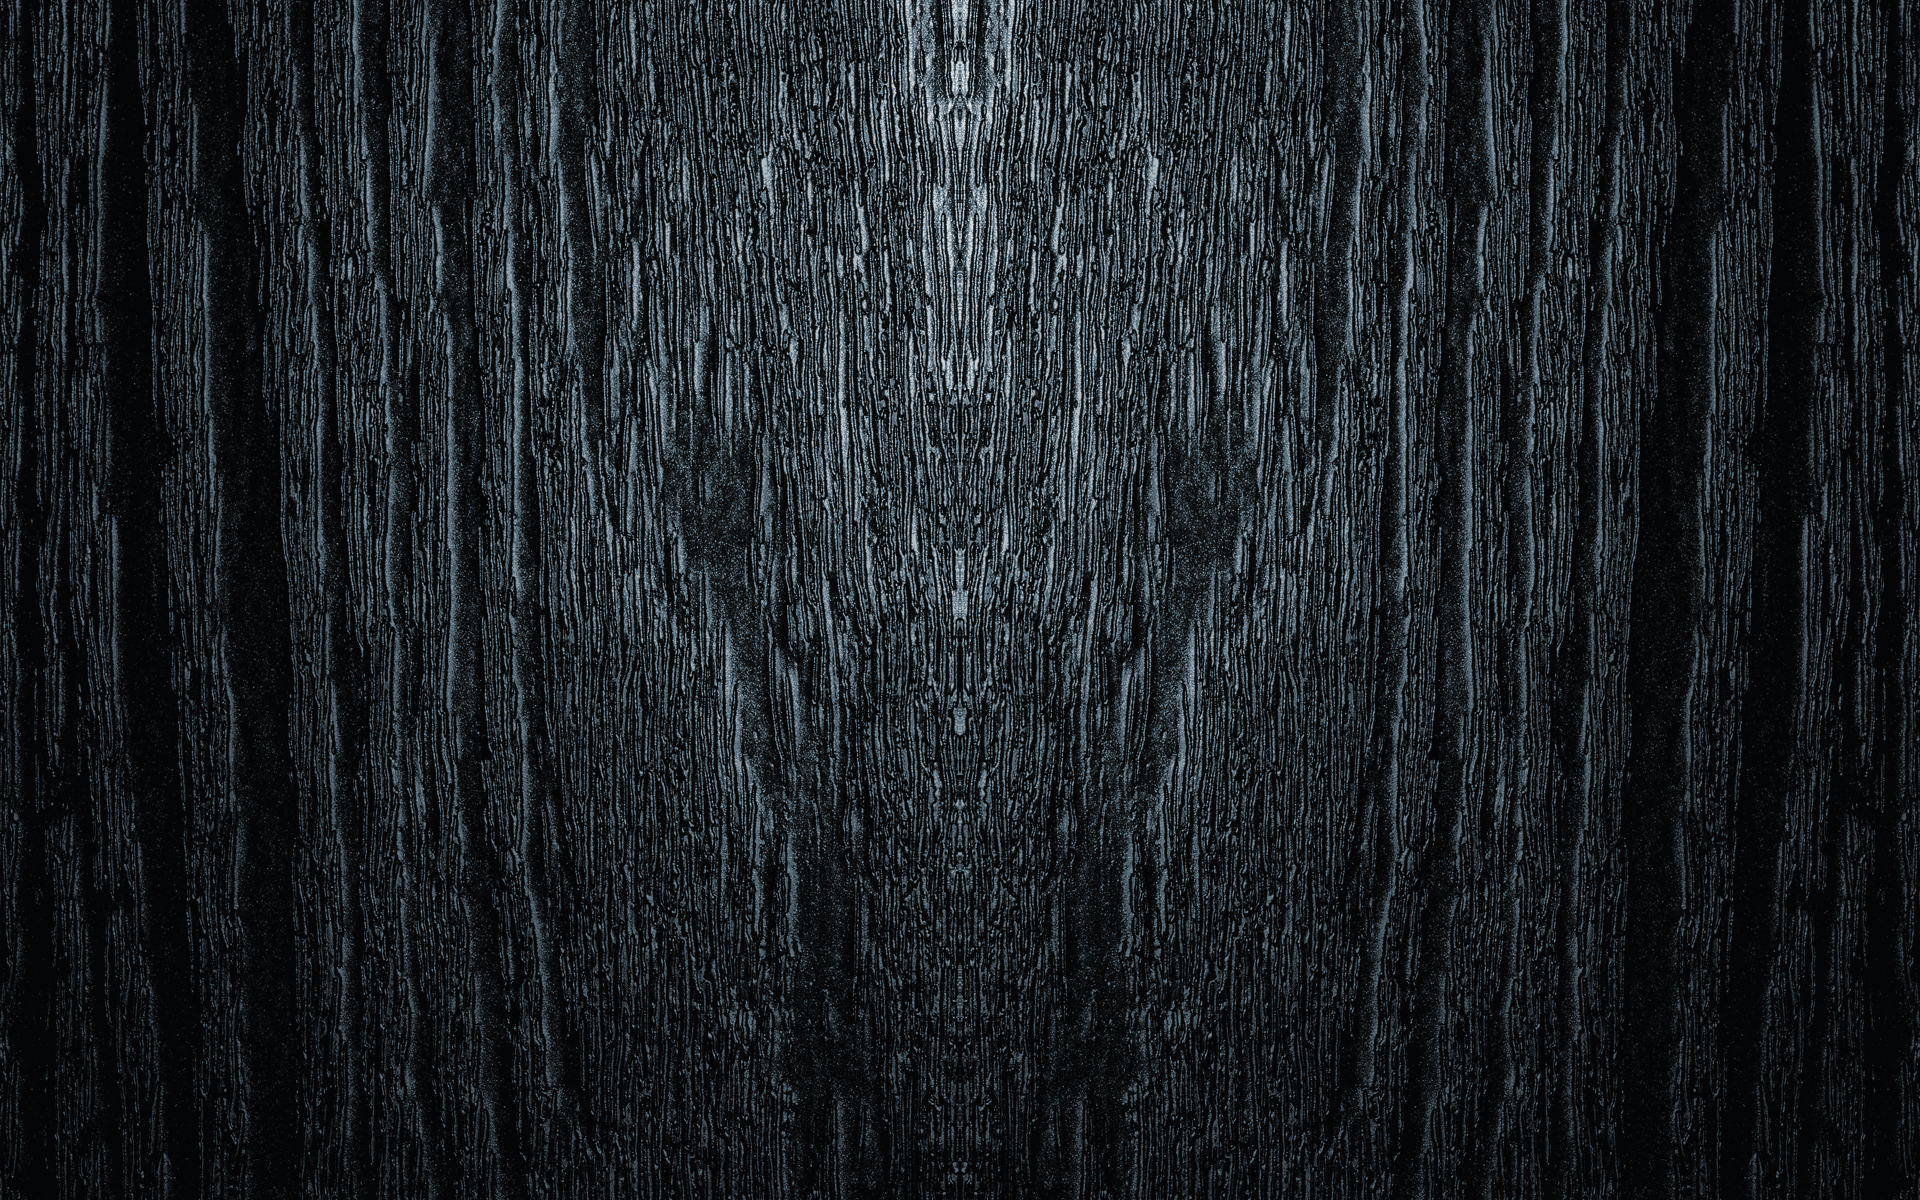 Dark Woods HD Background.